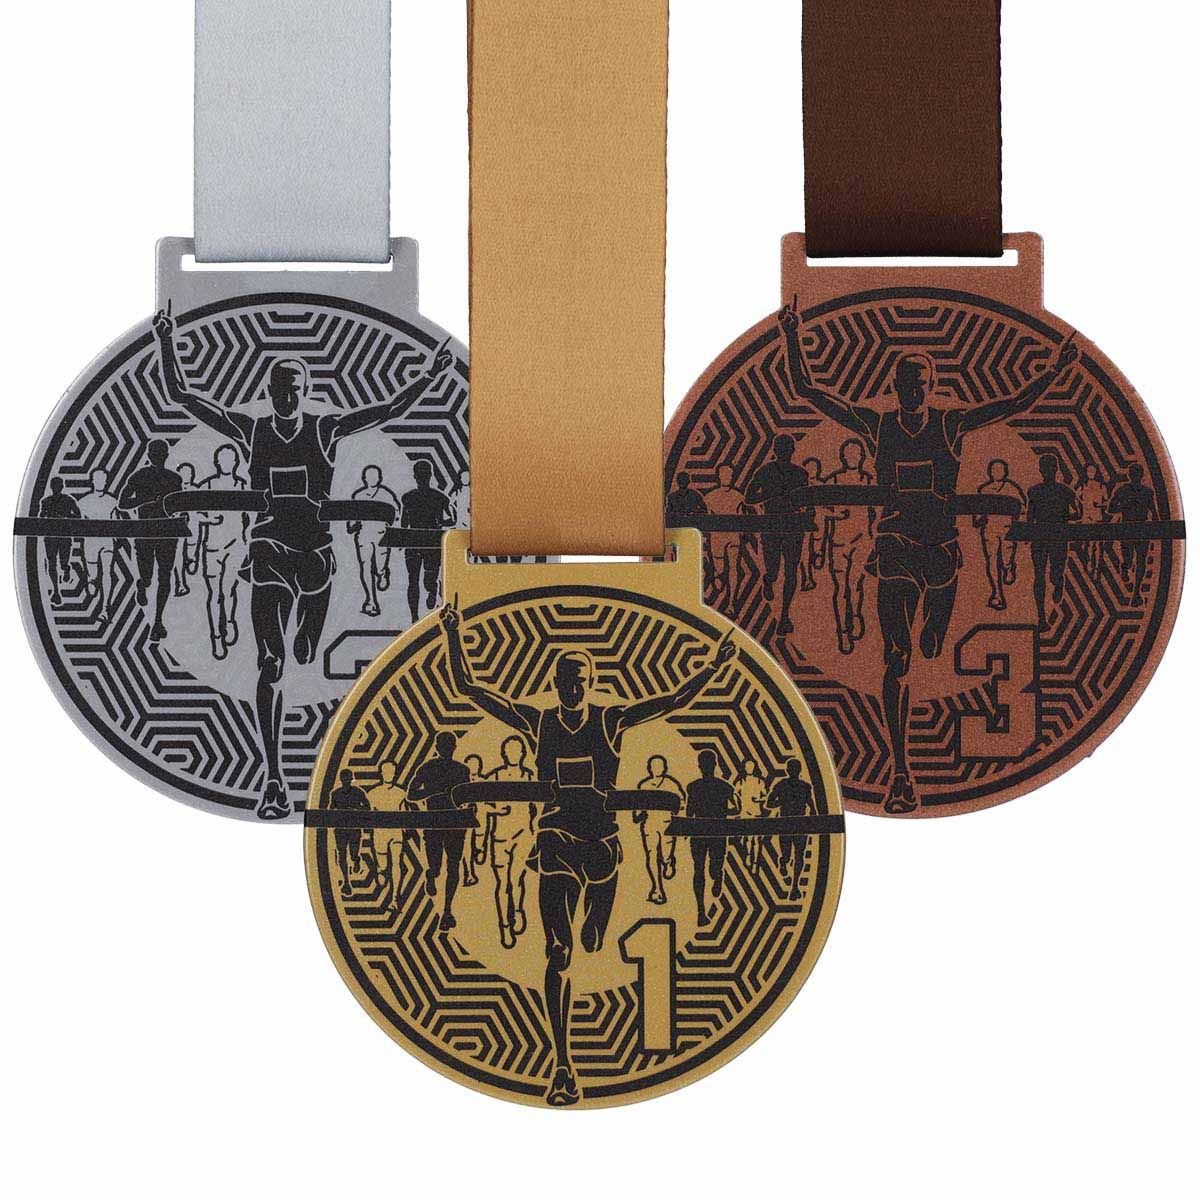 medale sportowe biegowe z miejscami 123 finisher